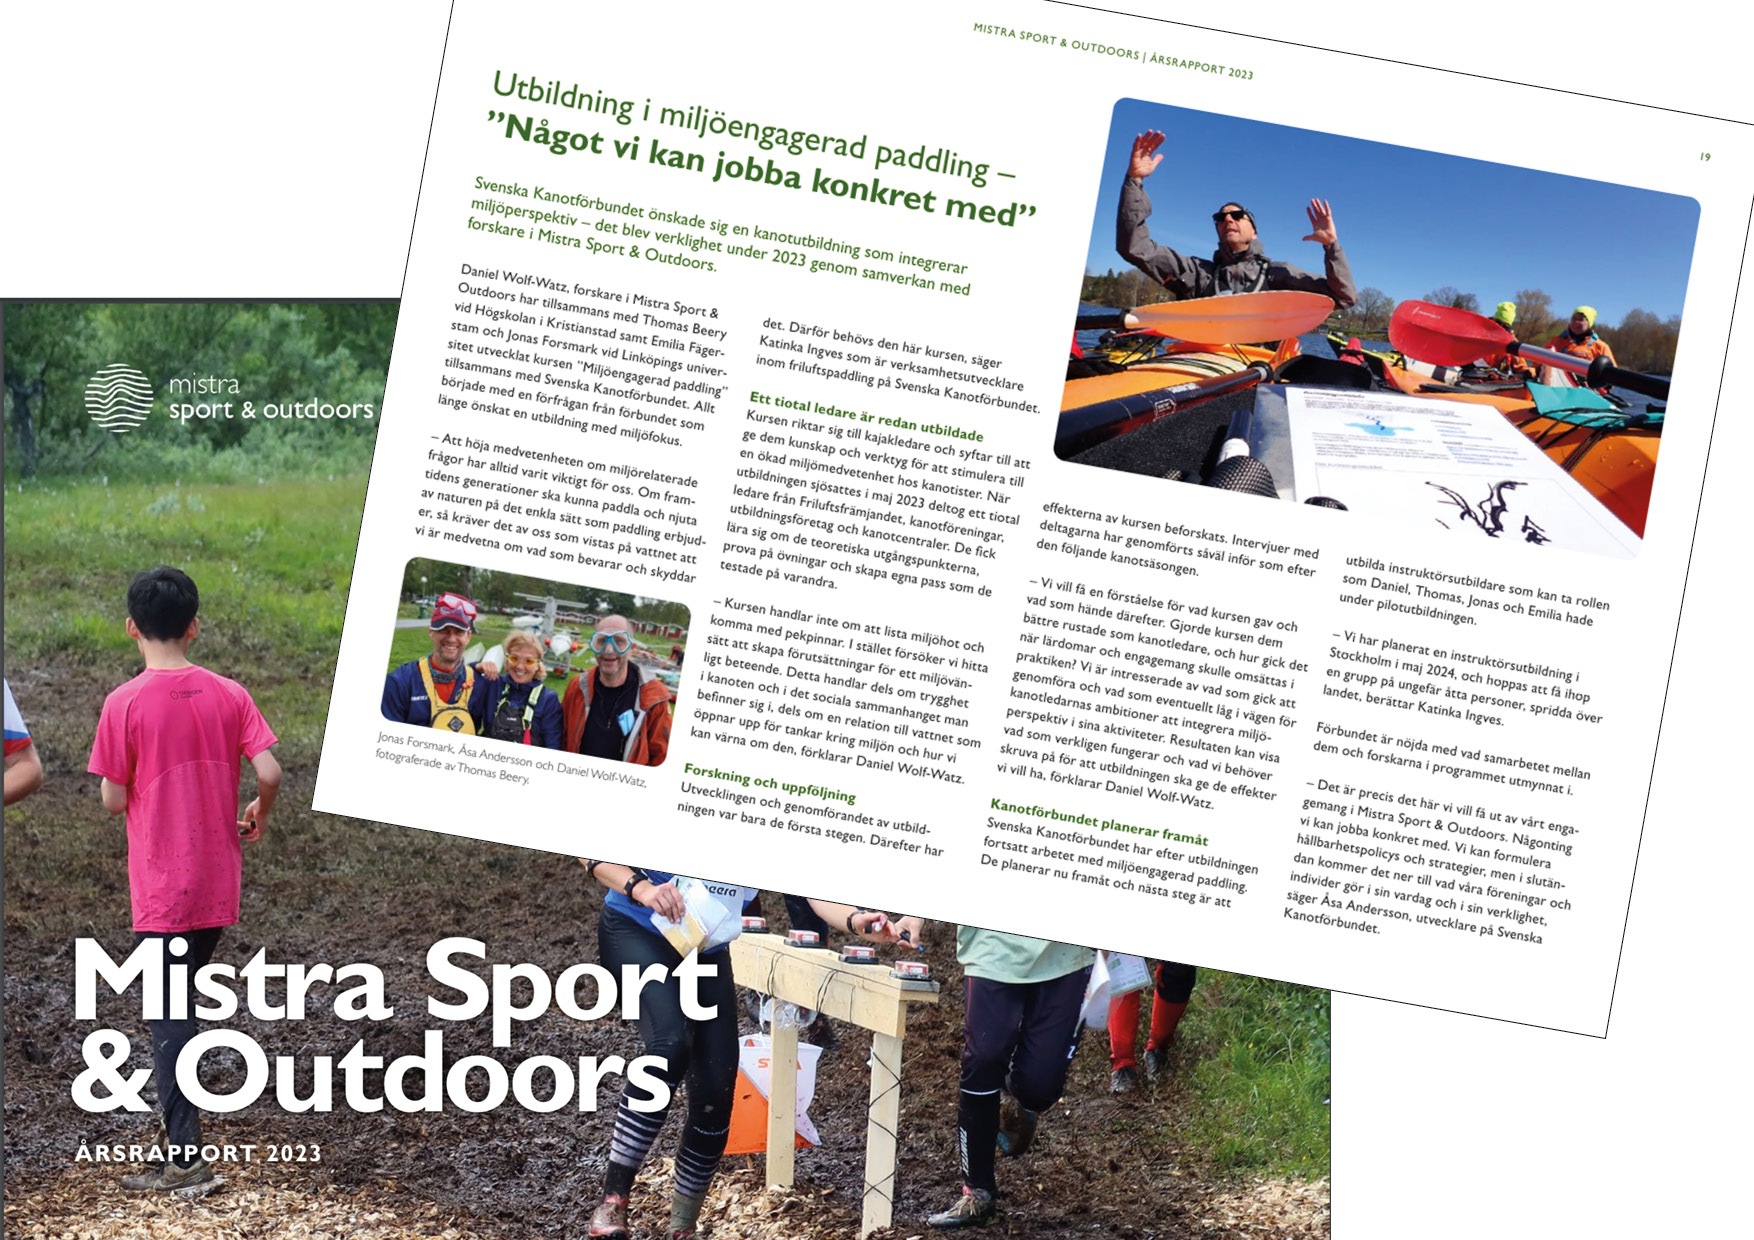 Kanotförbundet uppmärksammas i Mistra Sport and outdoors årsrapport